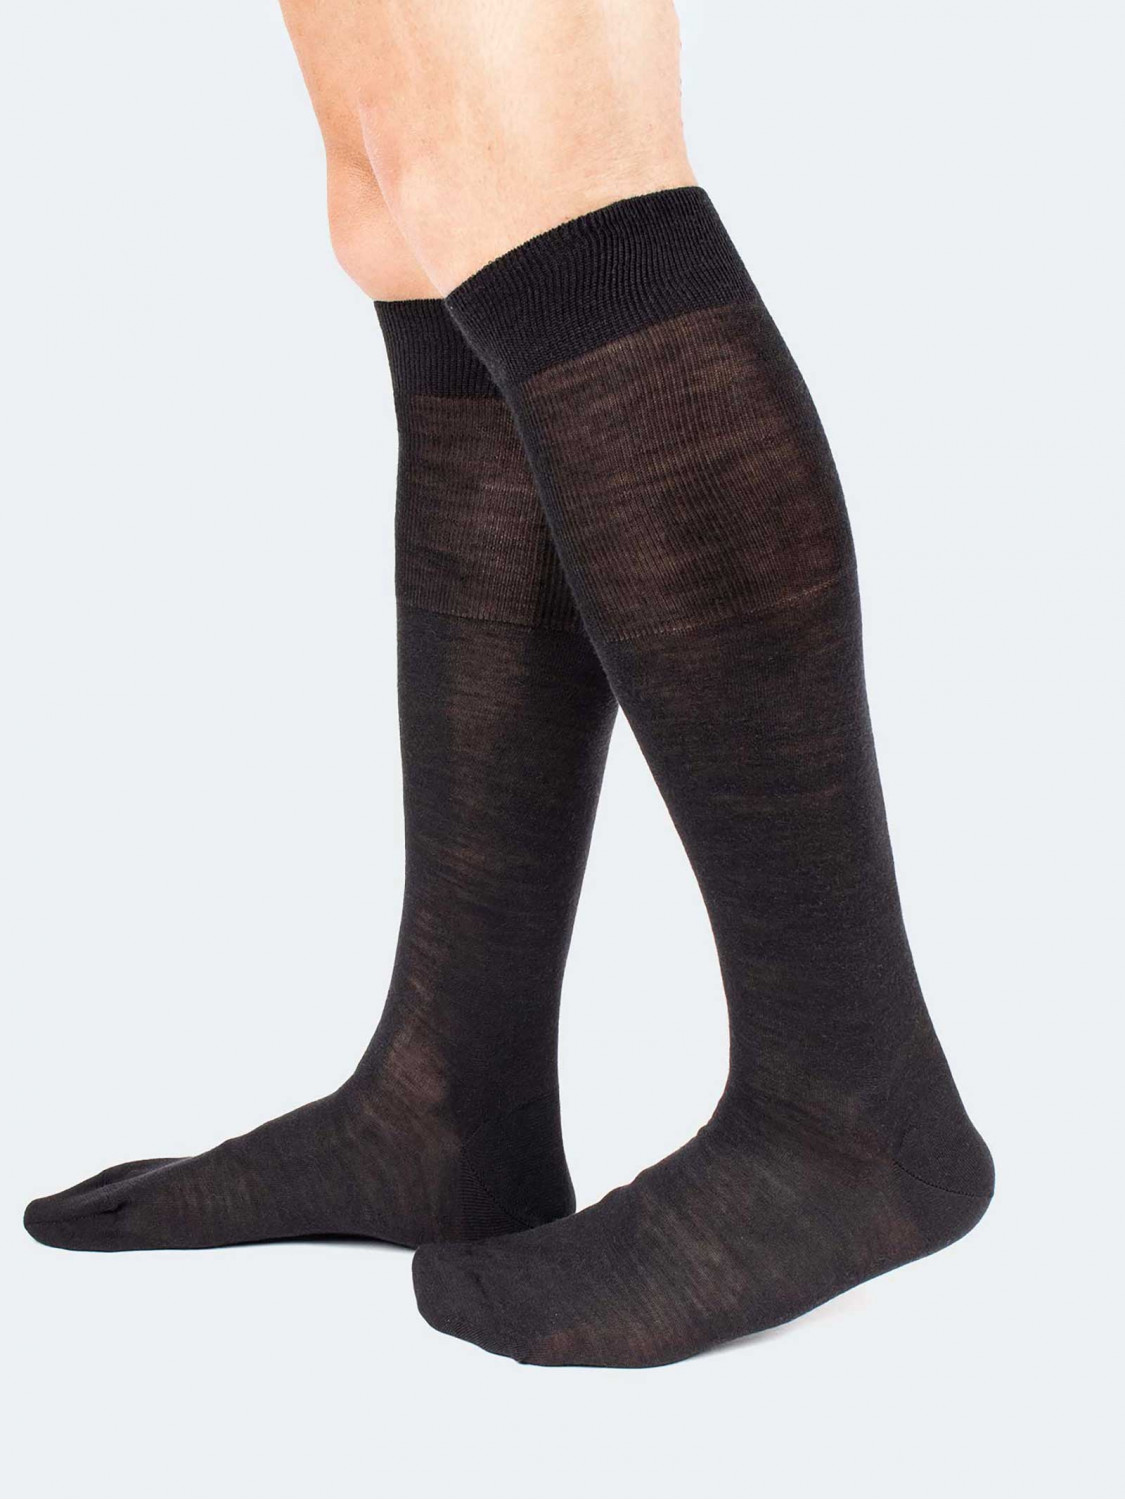 https://cioccacom.b-cdn.net/504-large_default/merinos-wool-knee-high-socks-made-in-italy.jpg